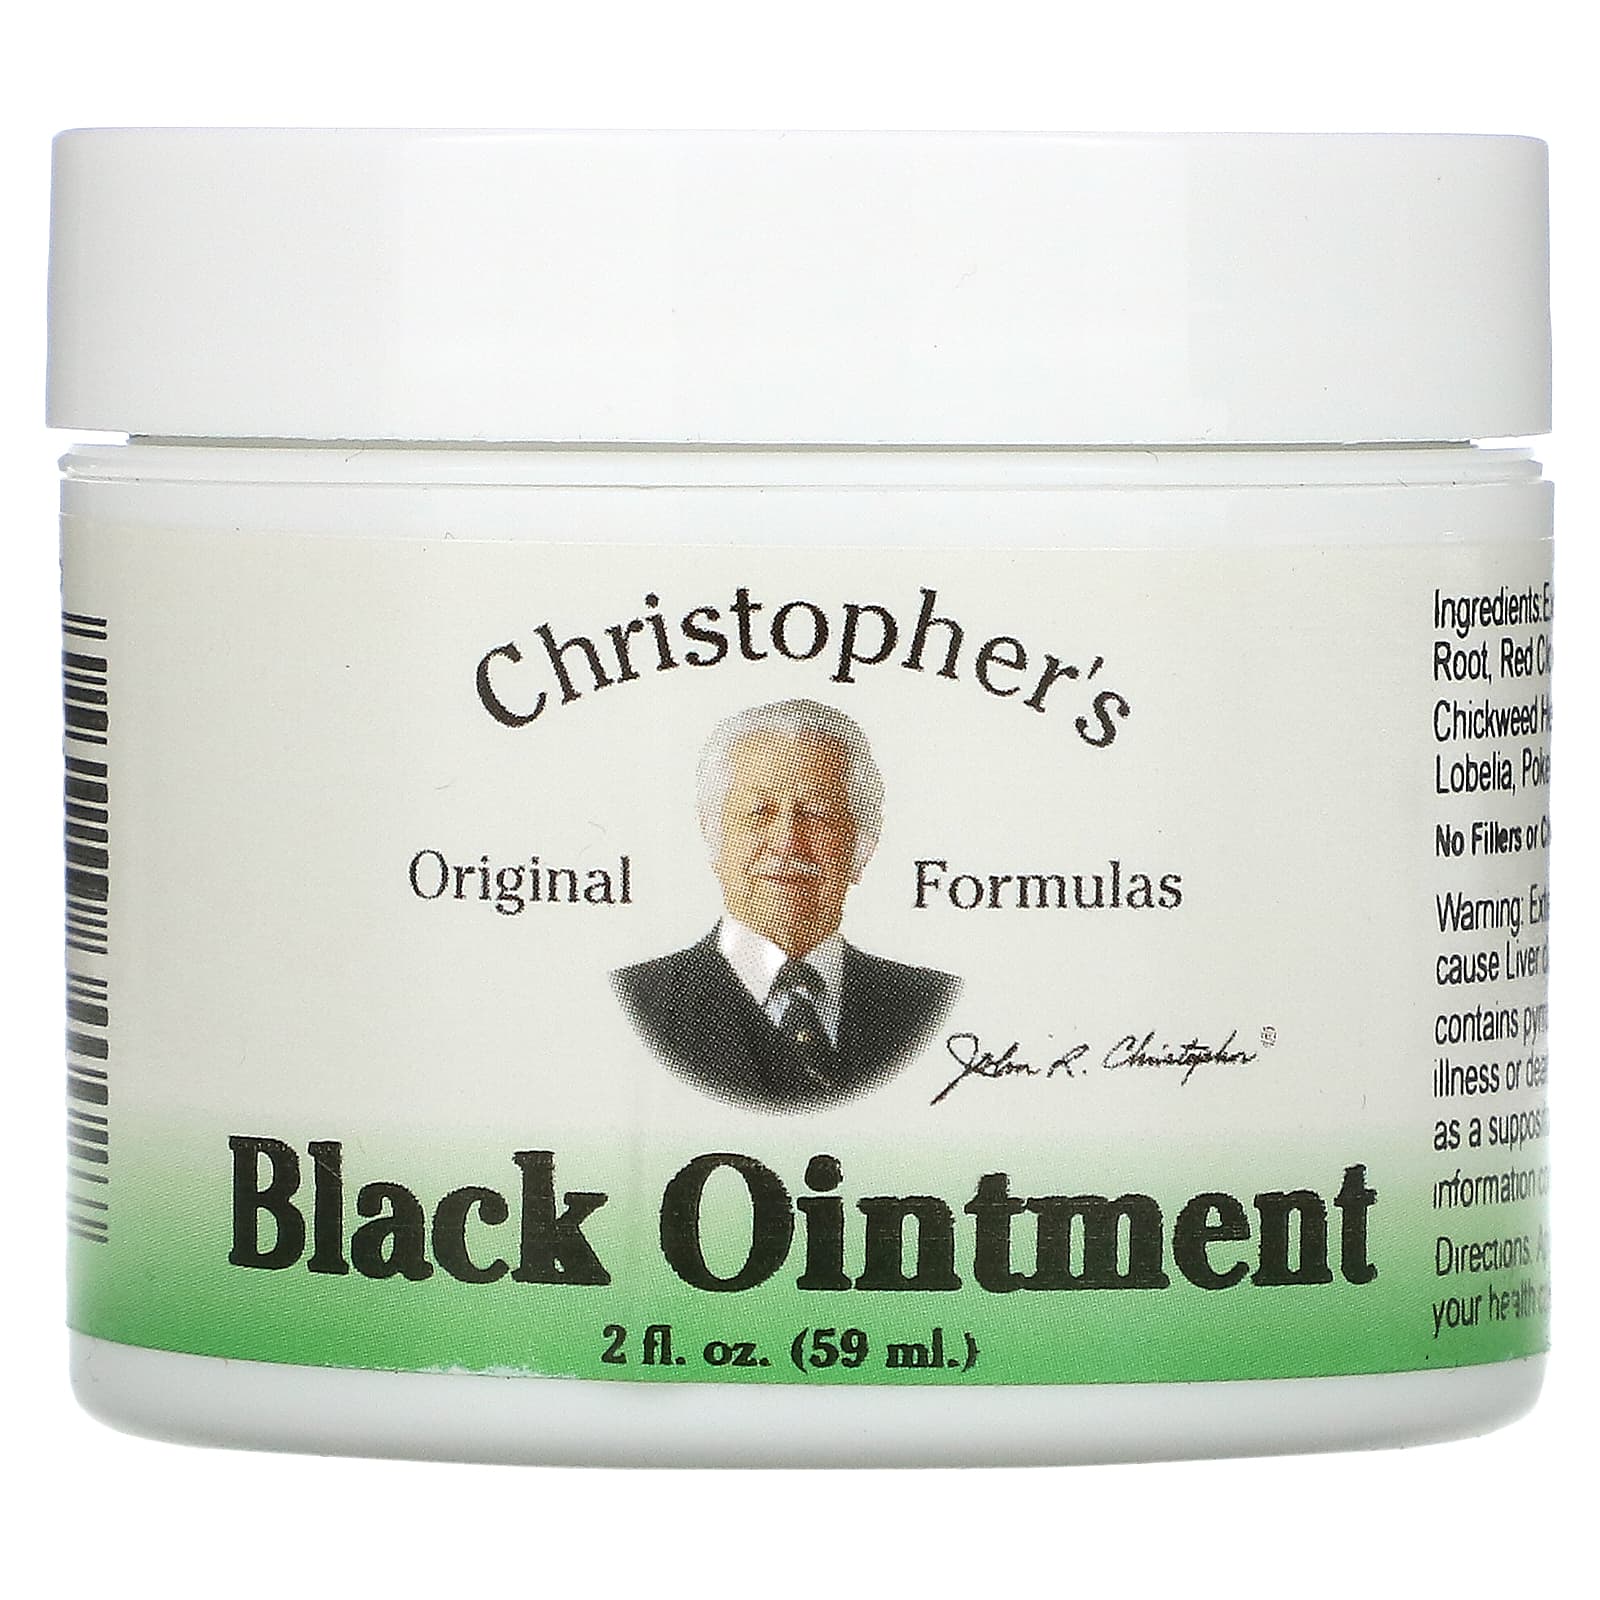 Christopher's Original Formulas Black Ointment противовоспалительная 59 мл (2 жидкие унции) формула sinus plus 2 жидкие унции 59 мл christopher s original formulas